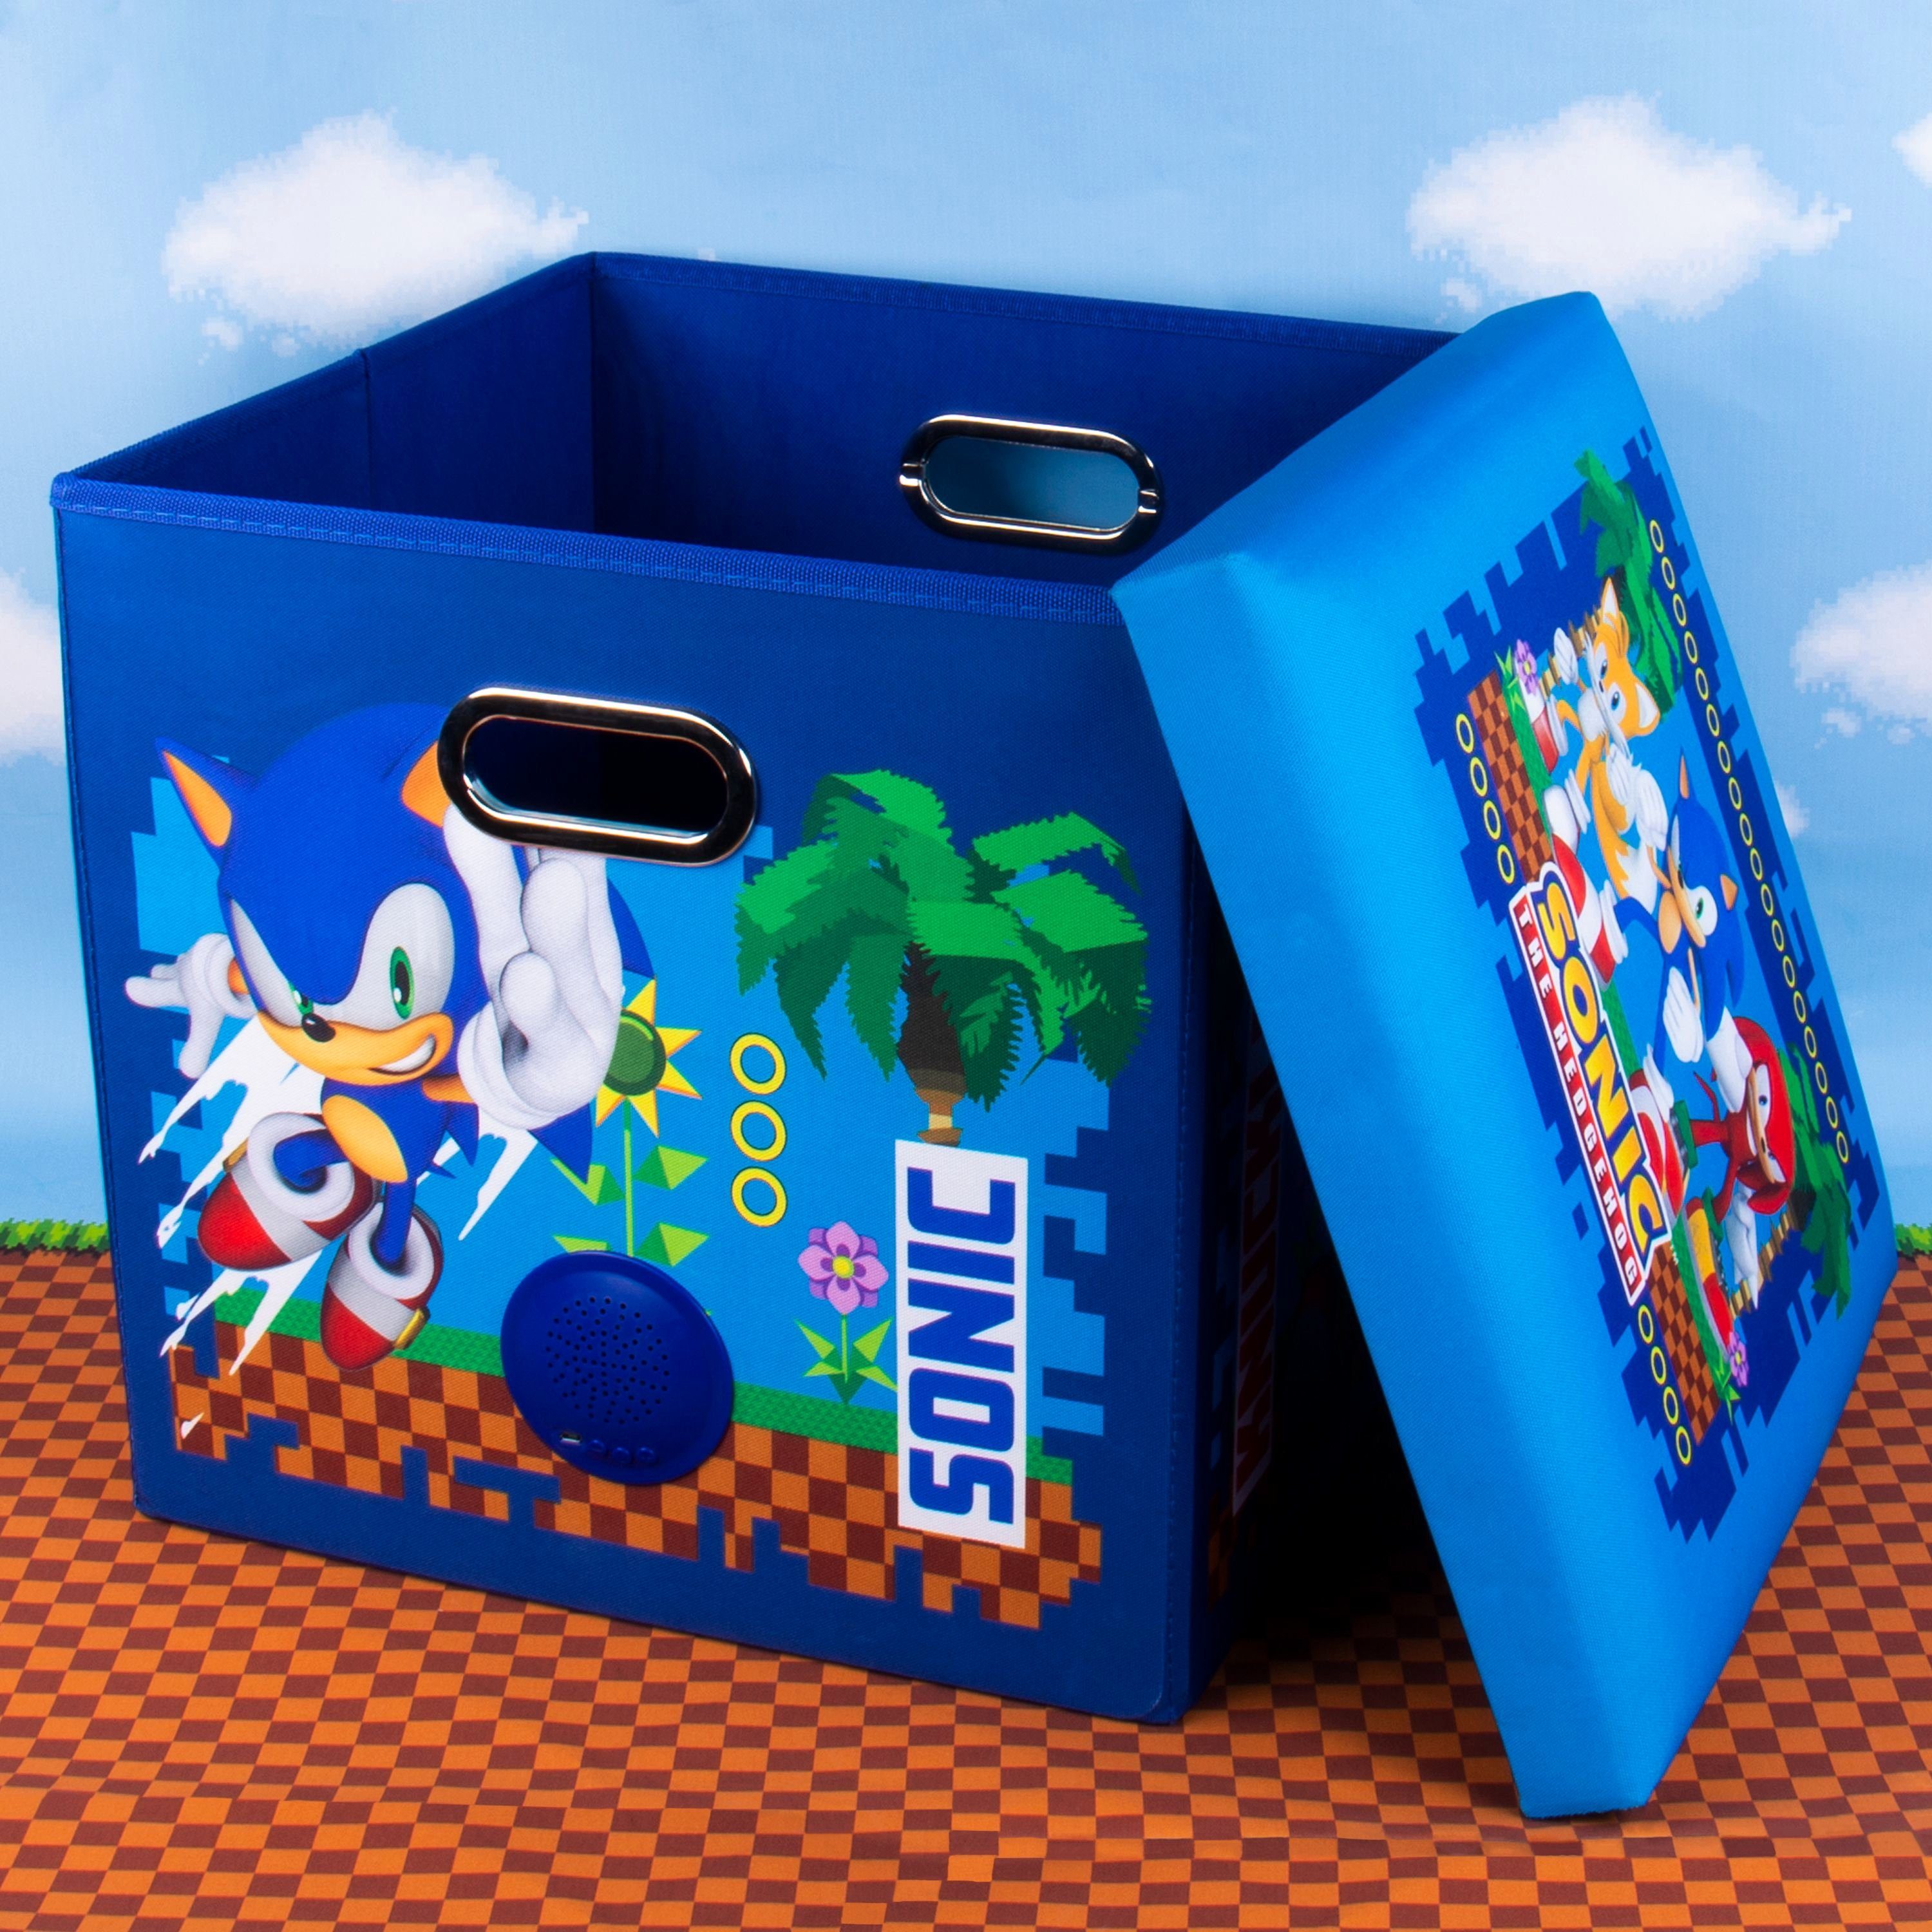 Wireless the (Lautsprecher, creations Hedgehog in Sitzmöglichkeit Sonic Sound Lautsprecher einem) Box Aufbewahrungsbox 3in1 und Fizz